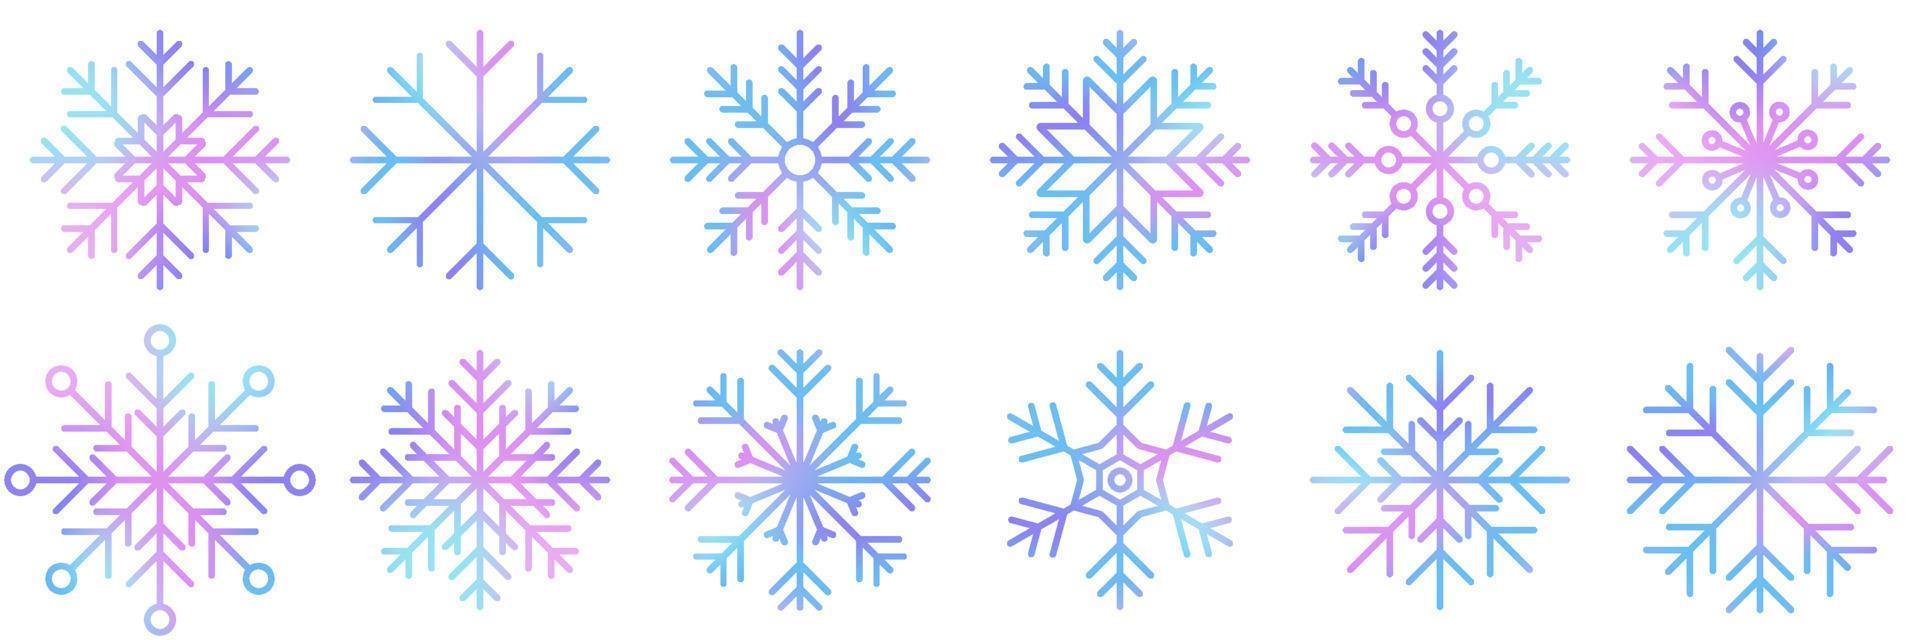 conjunto de flocos de neve em aquarela de vetor. coleção de flocos de neve artísticos com textura aquarela. conjunto de flocos de neve. ilustração vetorial vetor